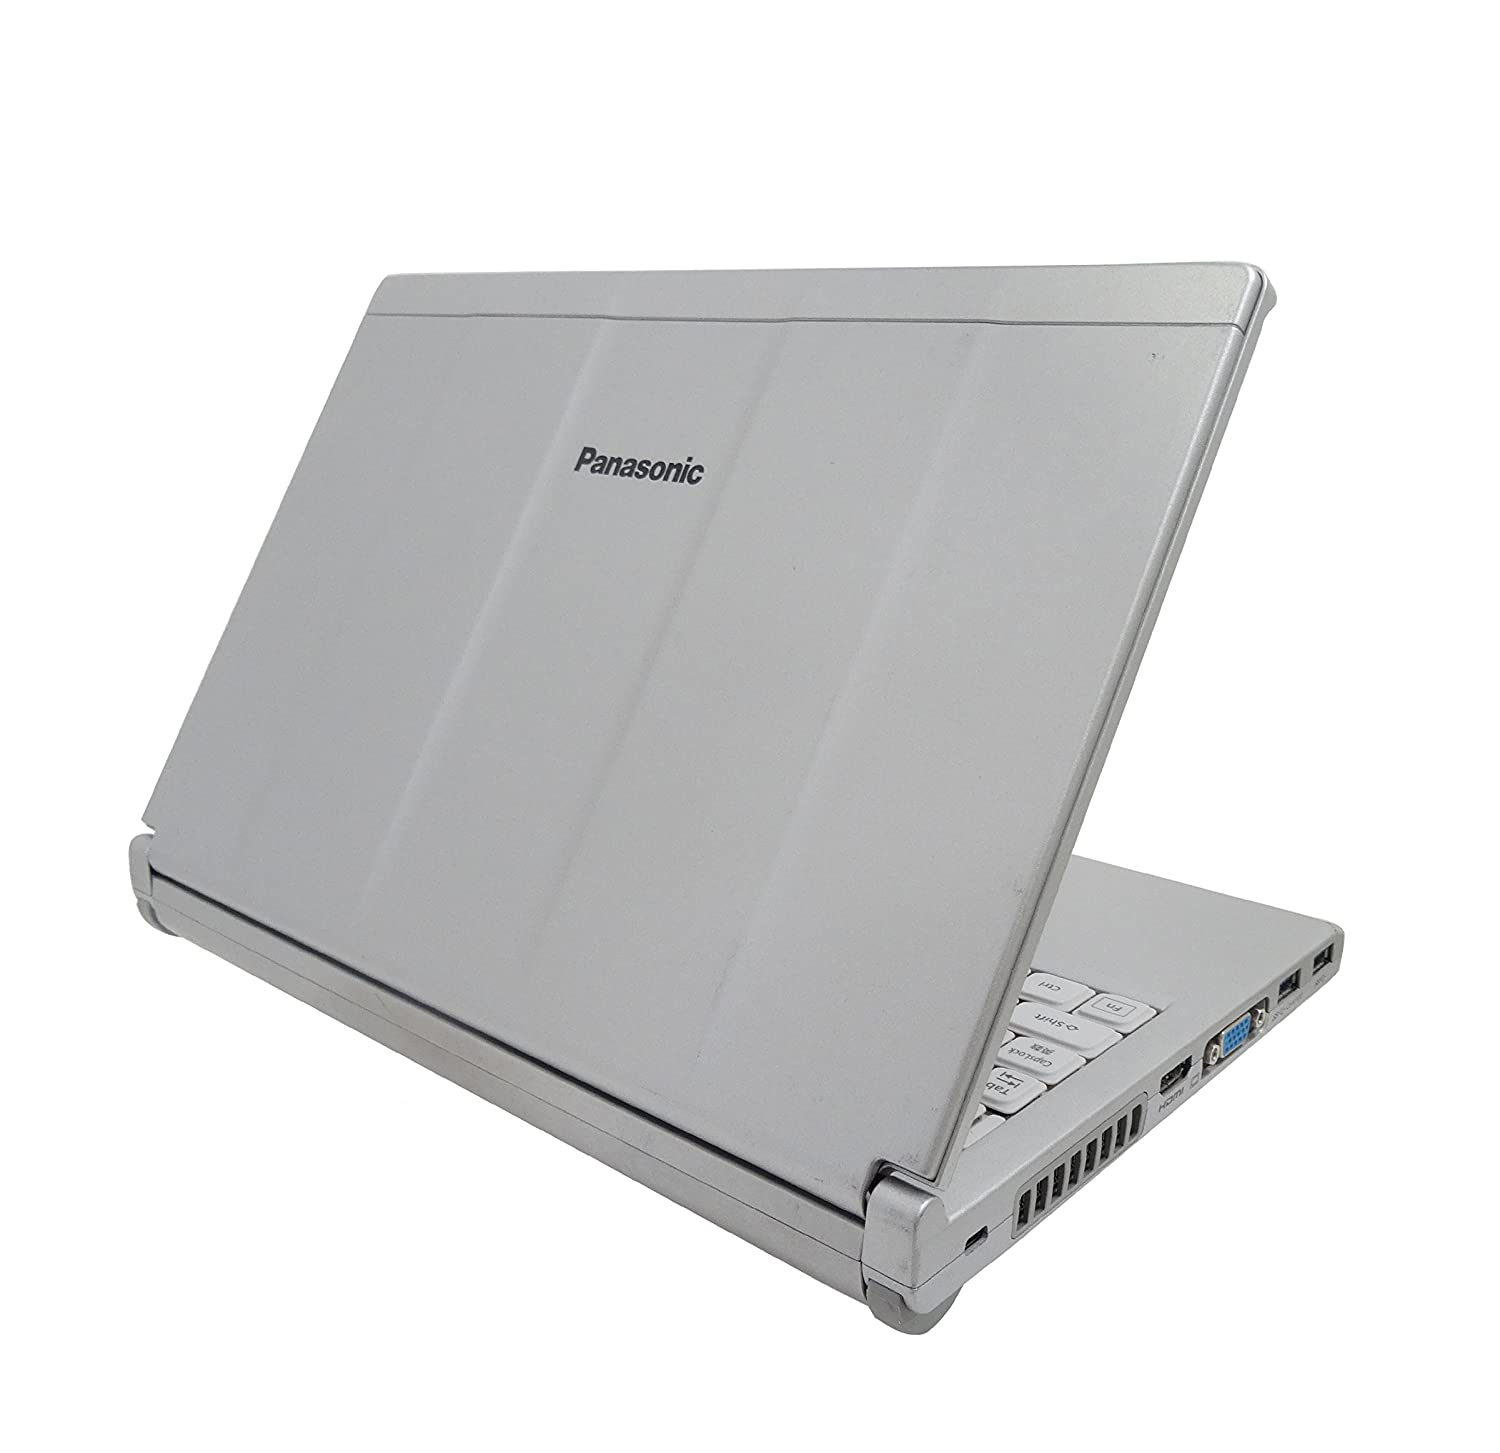 12インチワイド液晶CPU【SSD 480GB】Panasonic レッツノート 12型 ノートPC